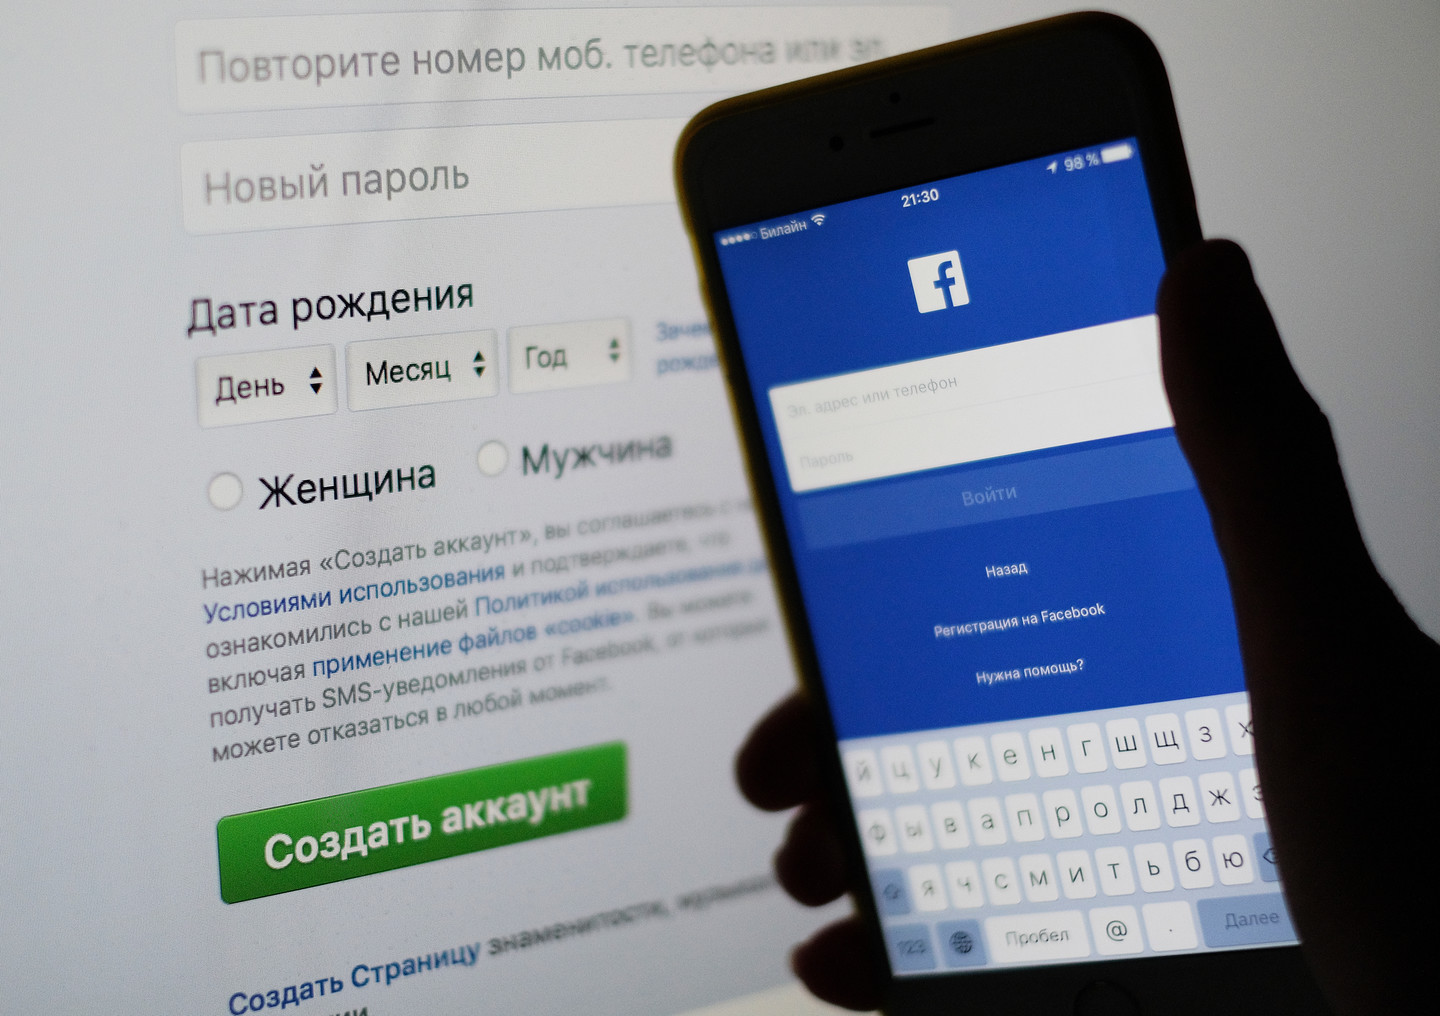 Турчинов увидел в "Фейсбуке" след ФСБ